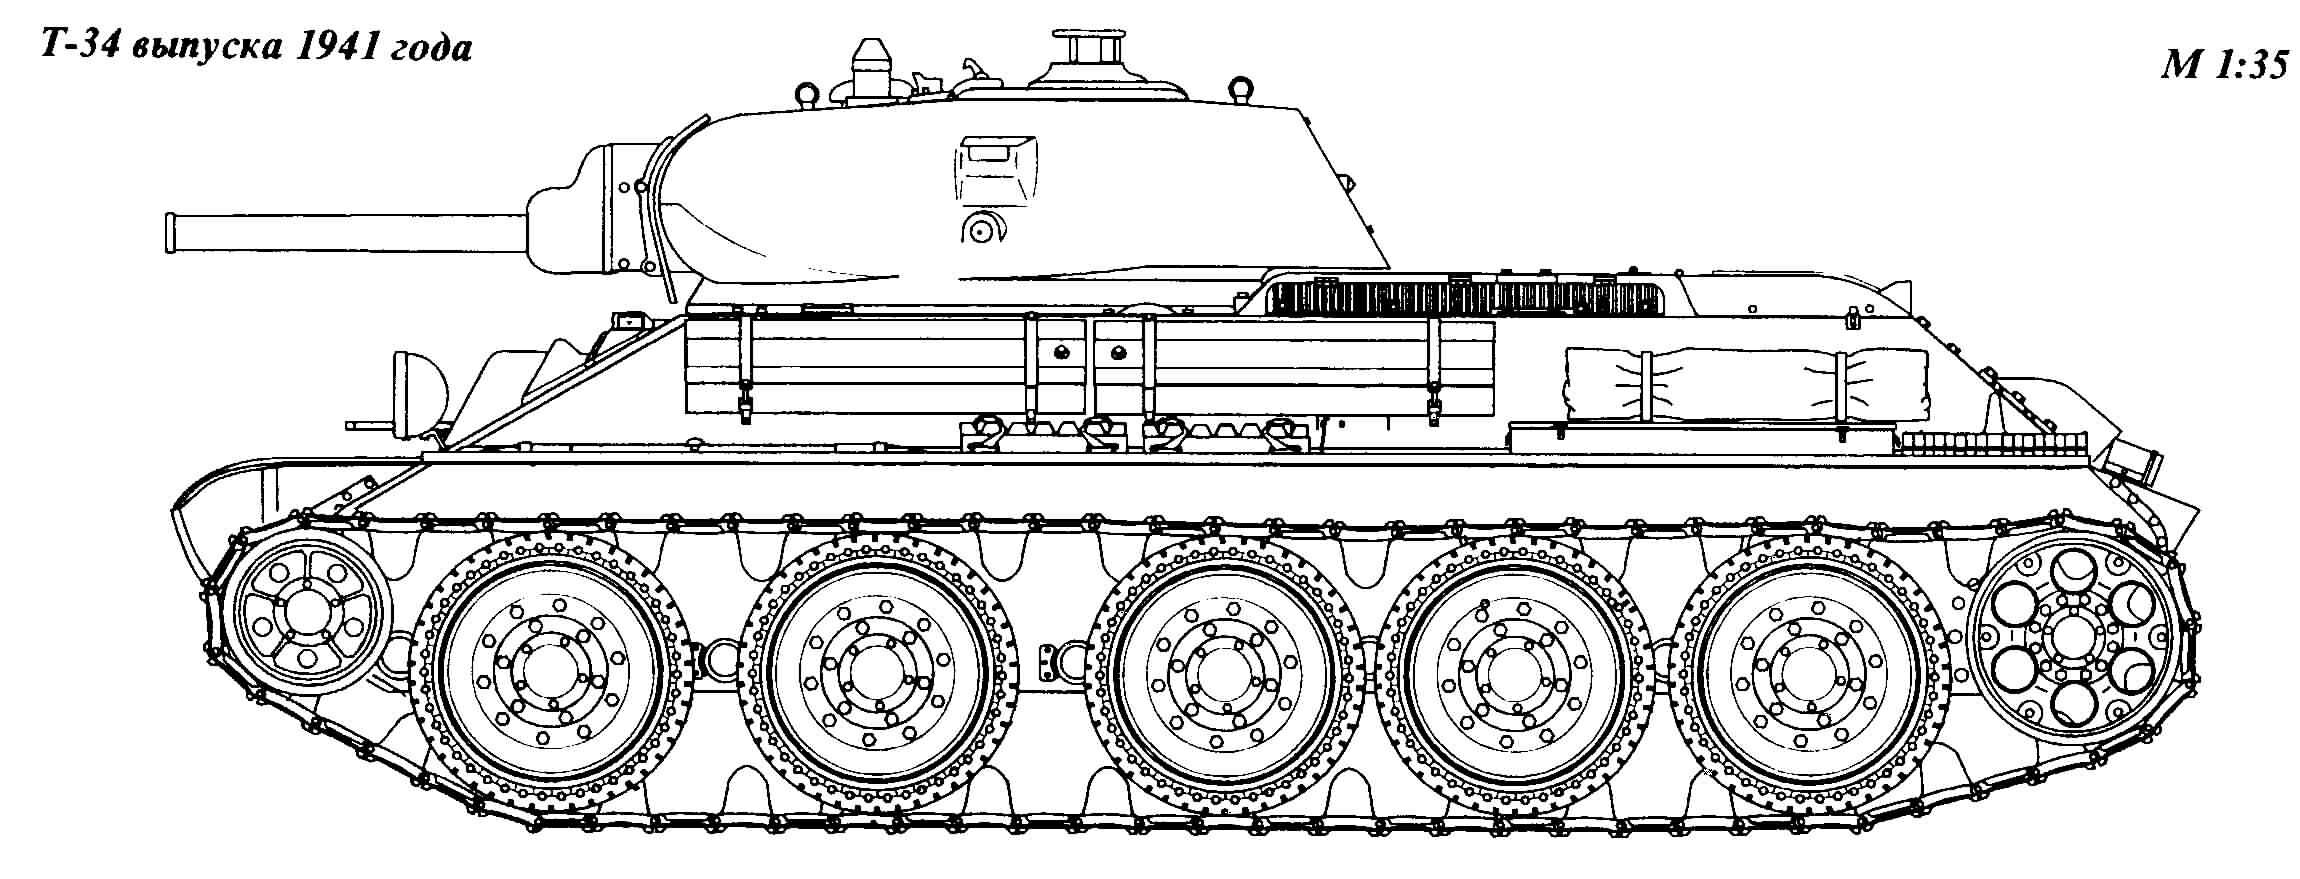 T 34 medium tank #1